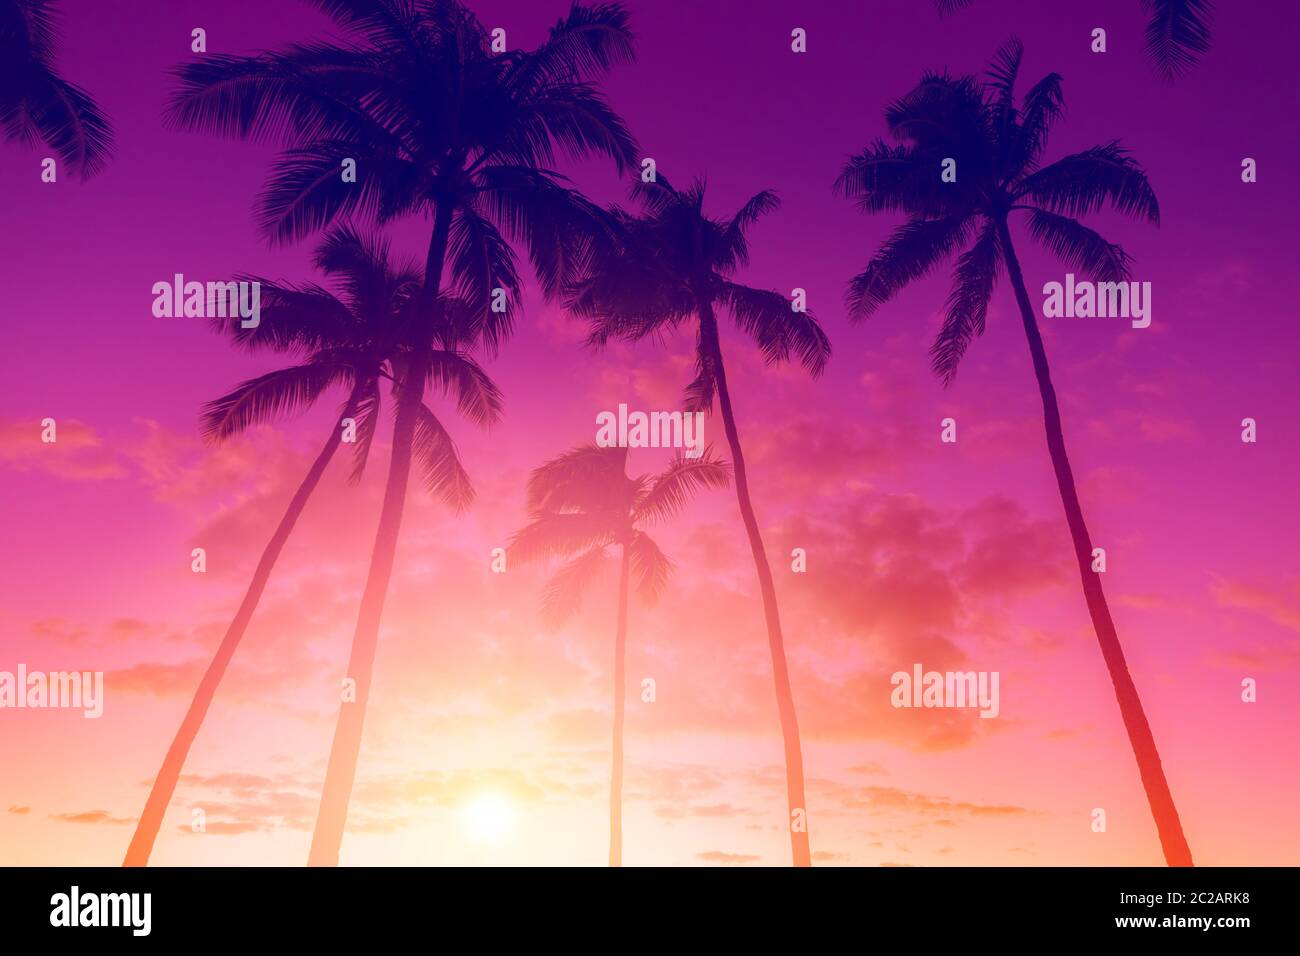 Skt de puesta de sol tropical con palmeras Foto de stock